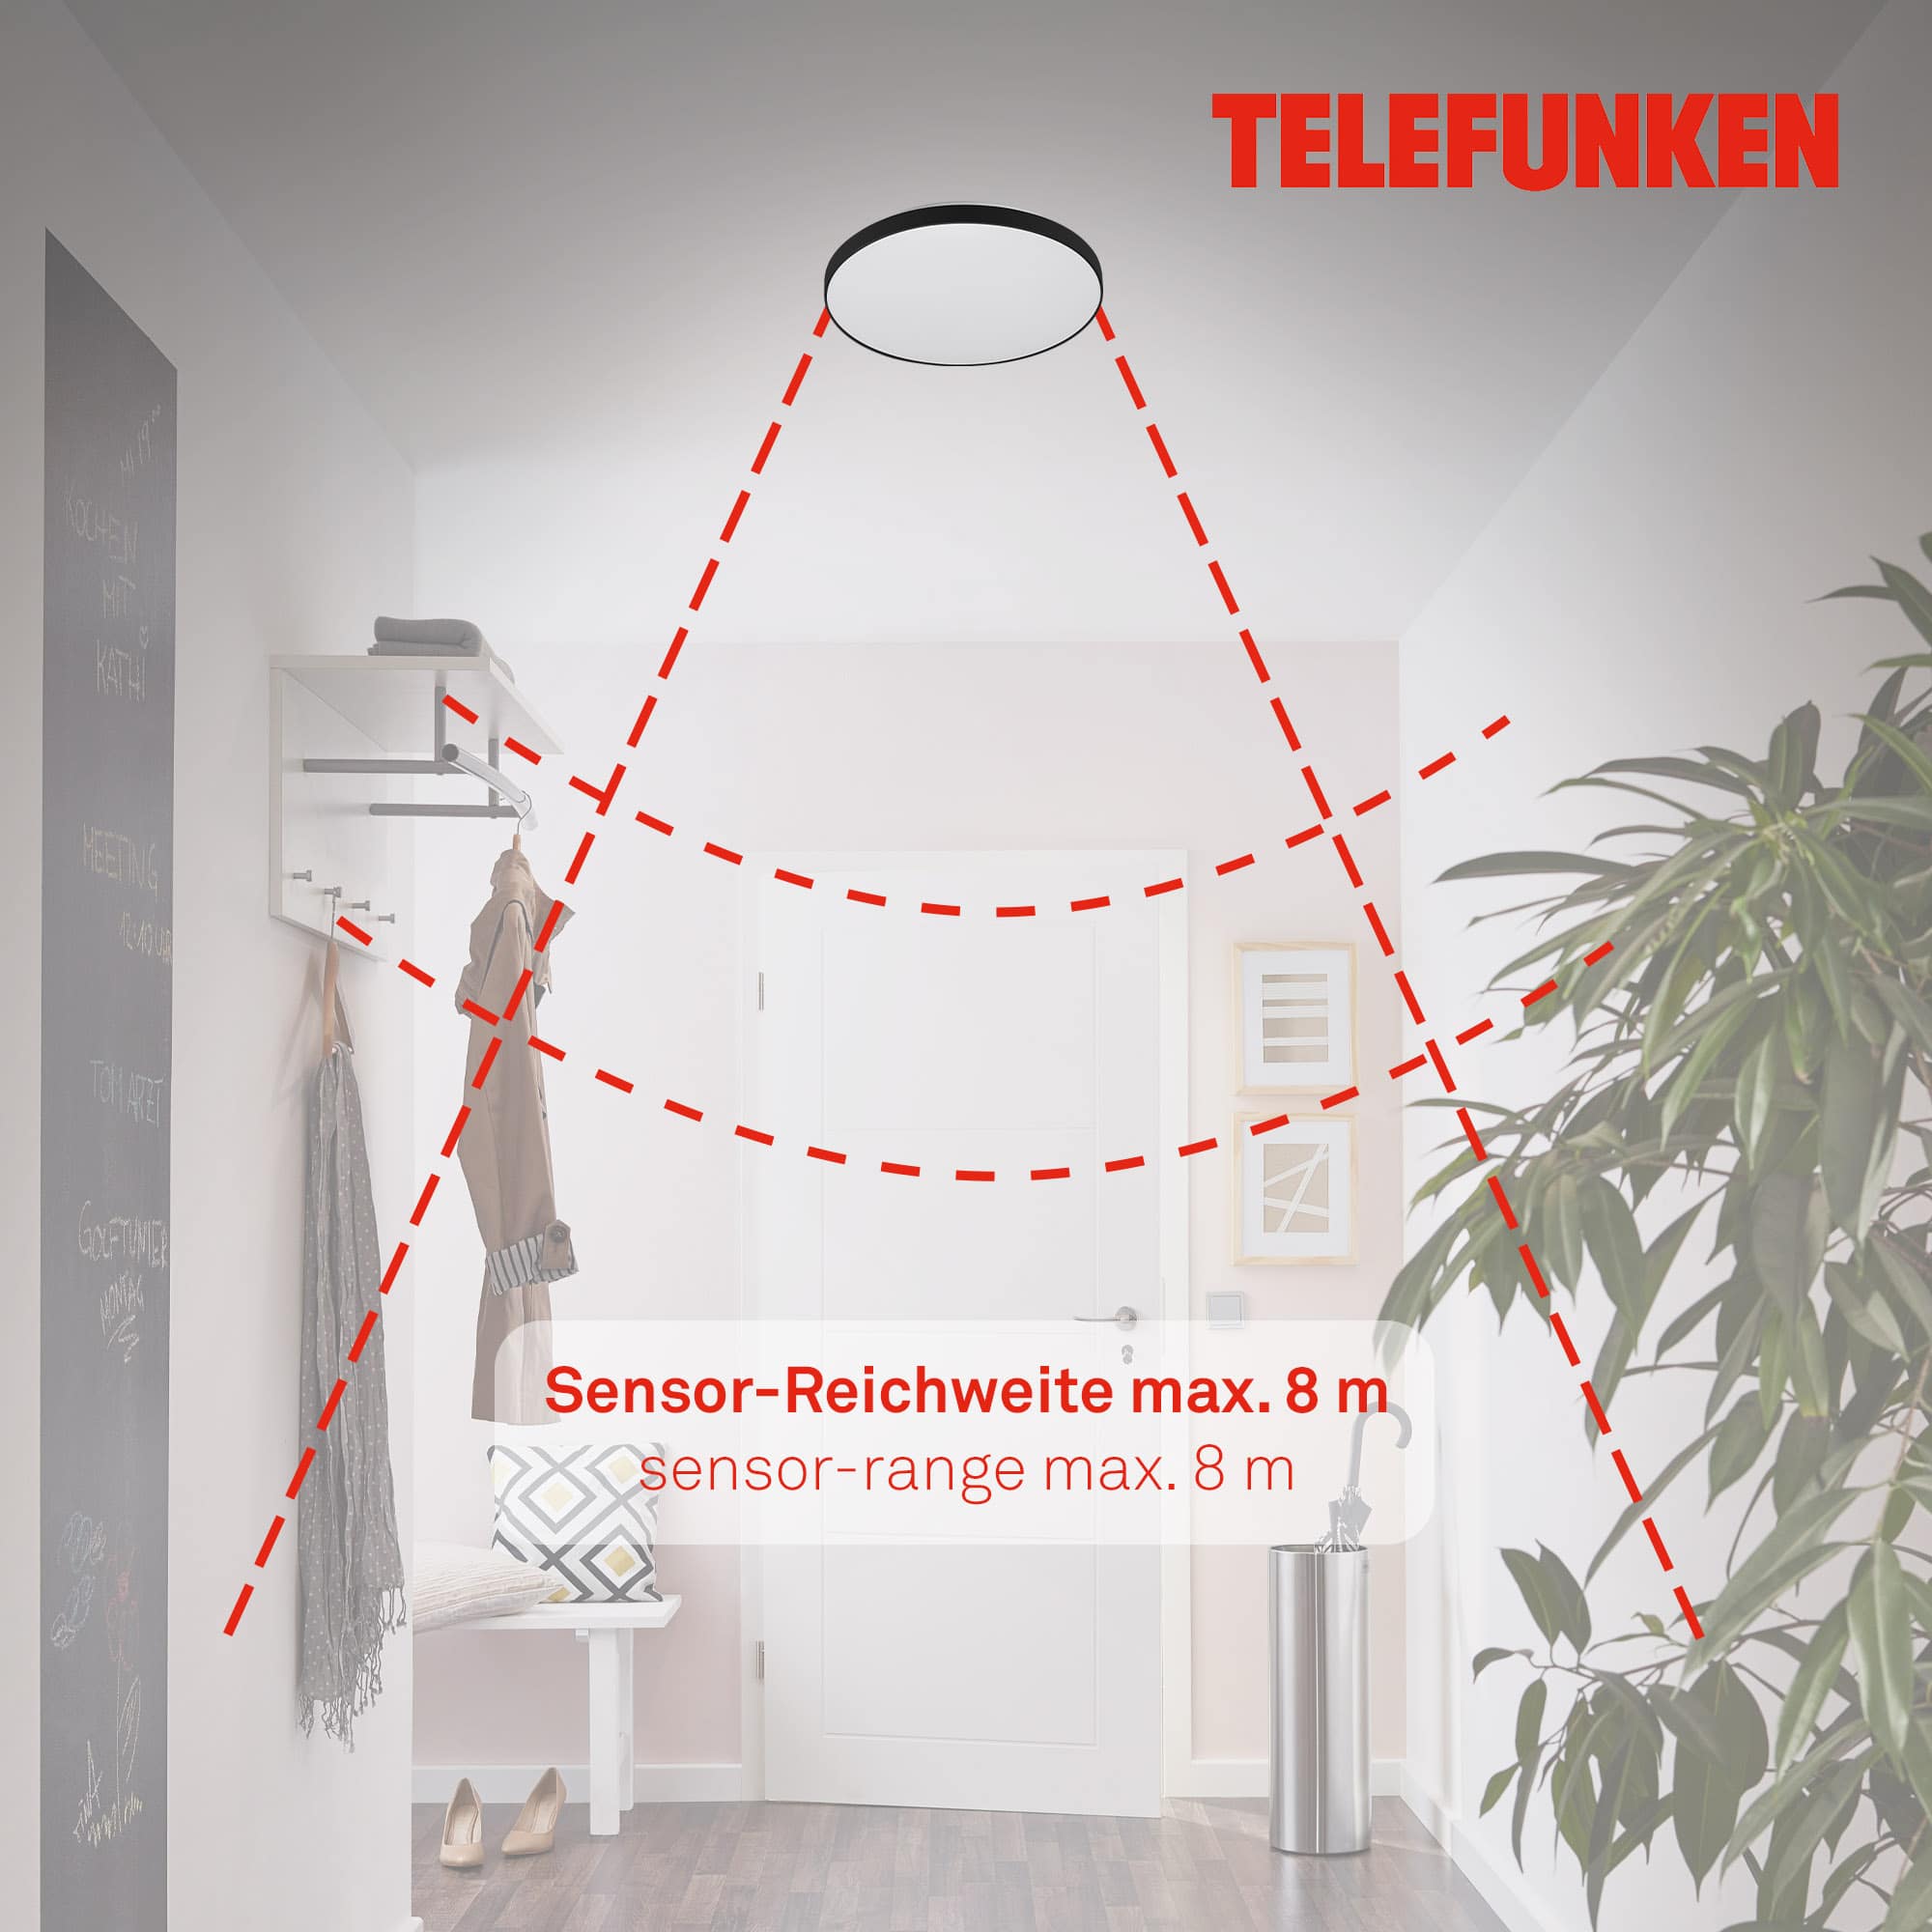 TELEFUNKEN Sensor LED Deckenleuchte, Ø 29 cm, 16 W, Weiß-Schwarz